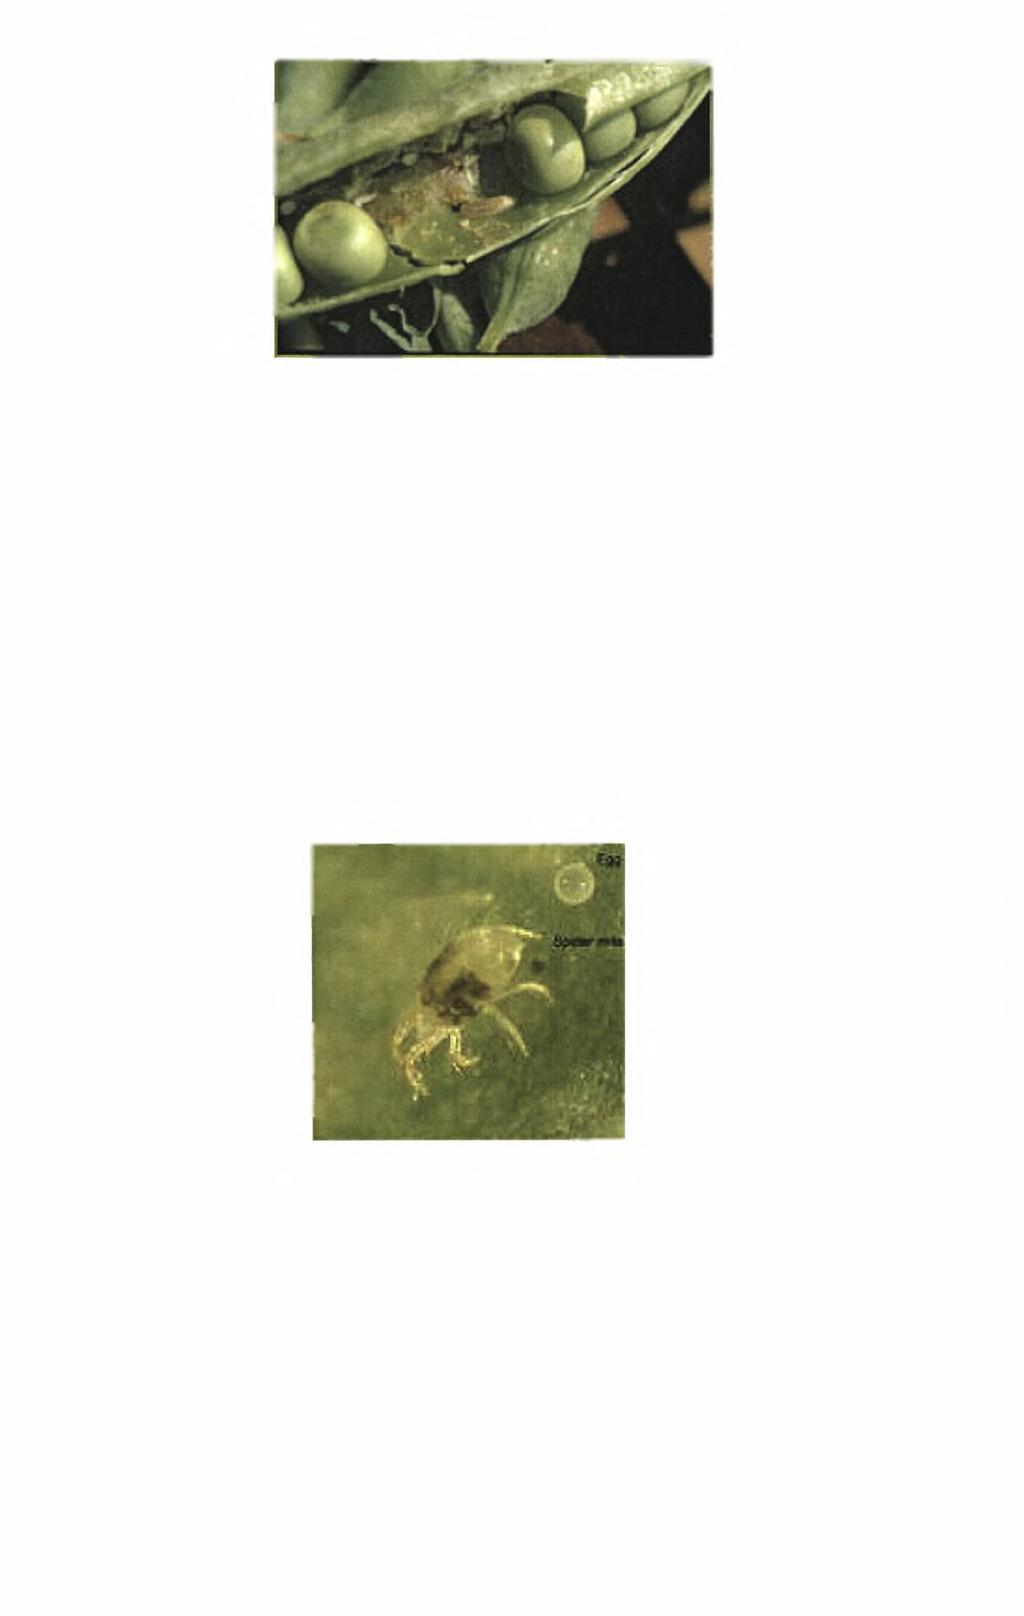 Εικόνα 3.9.1: Κάμπια των λοβών μπιζελιού (Laspeyresia nigricana) (Chodulska, L.M., http://www.